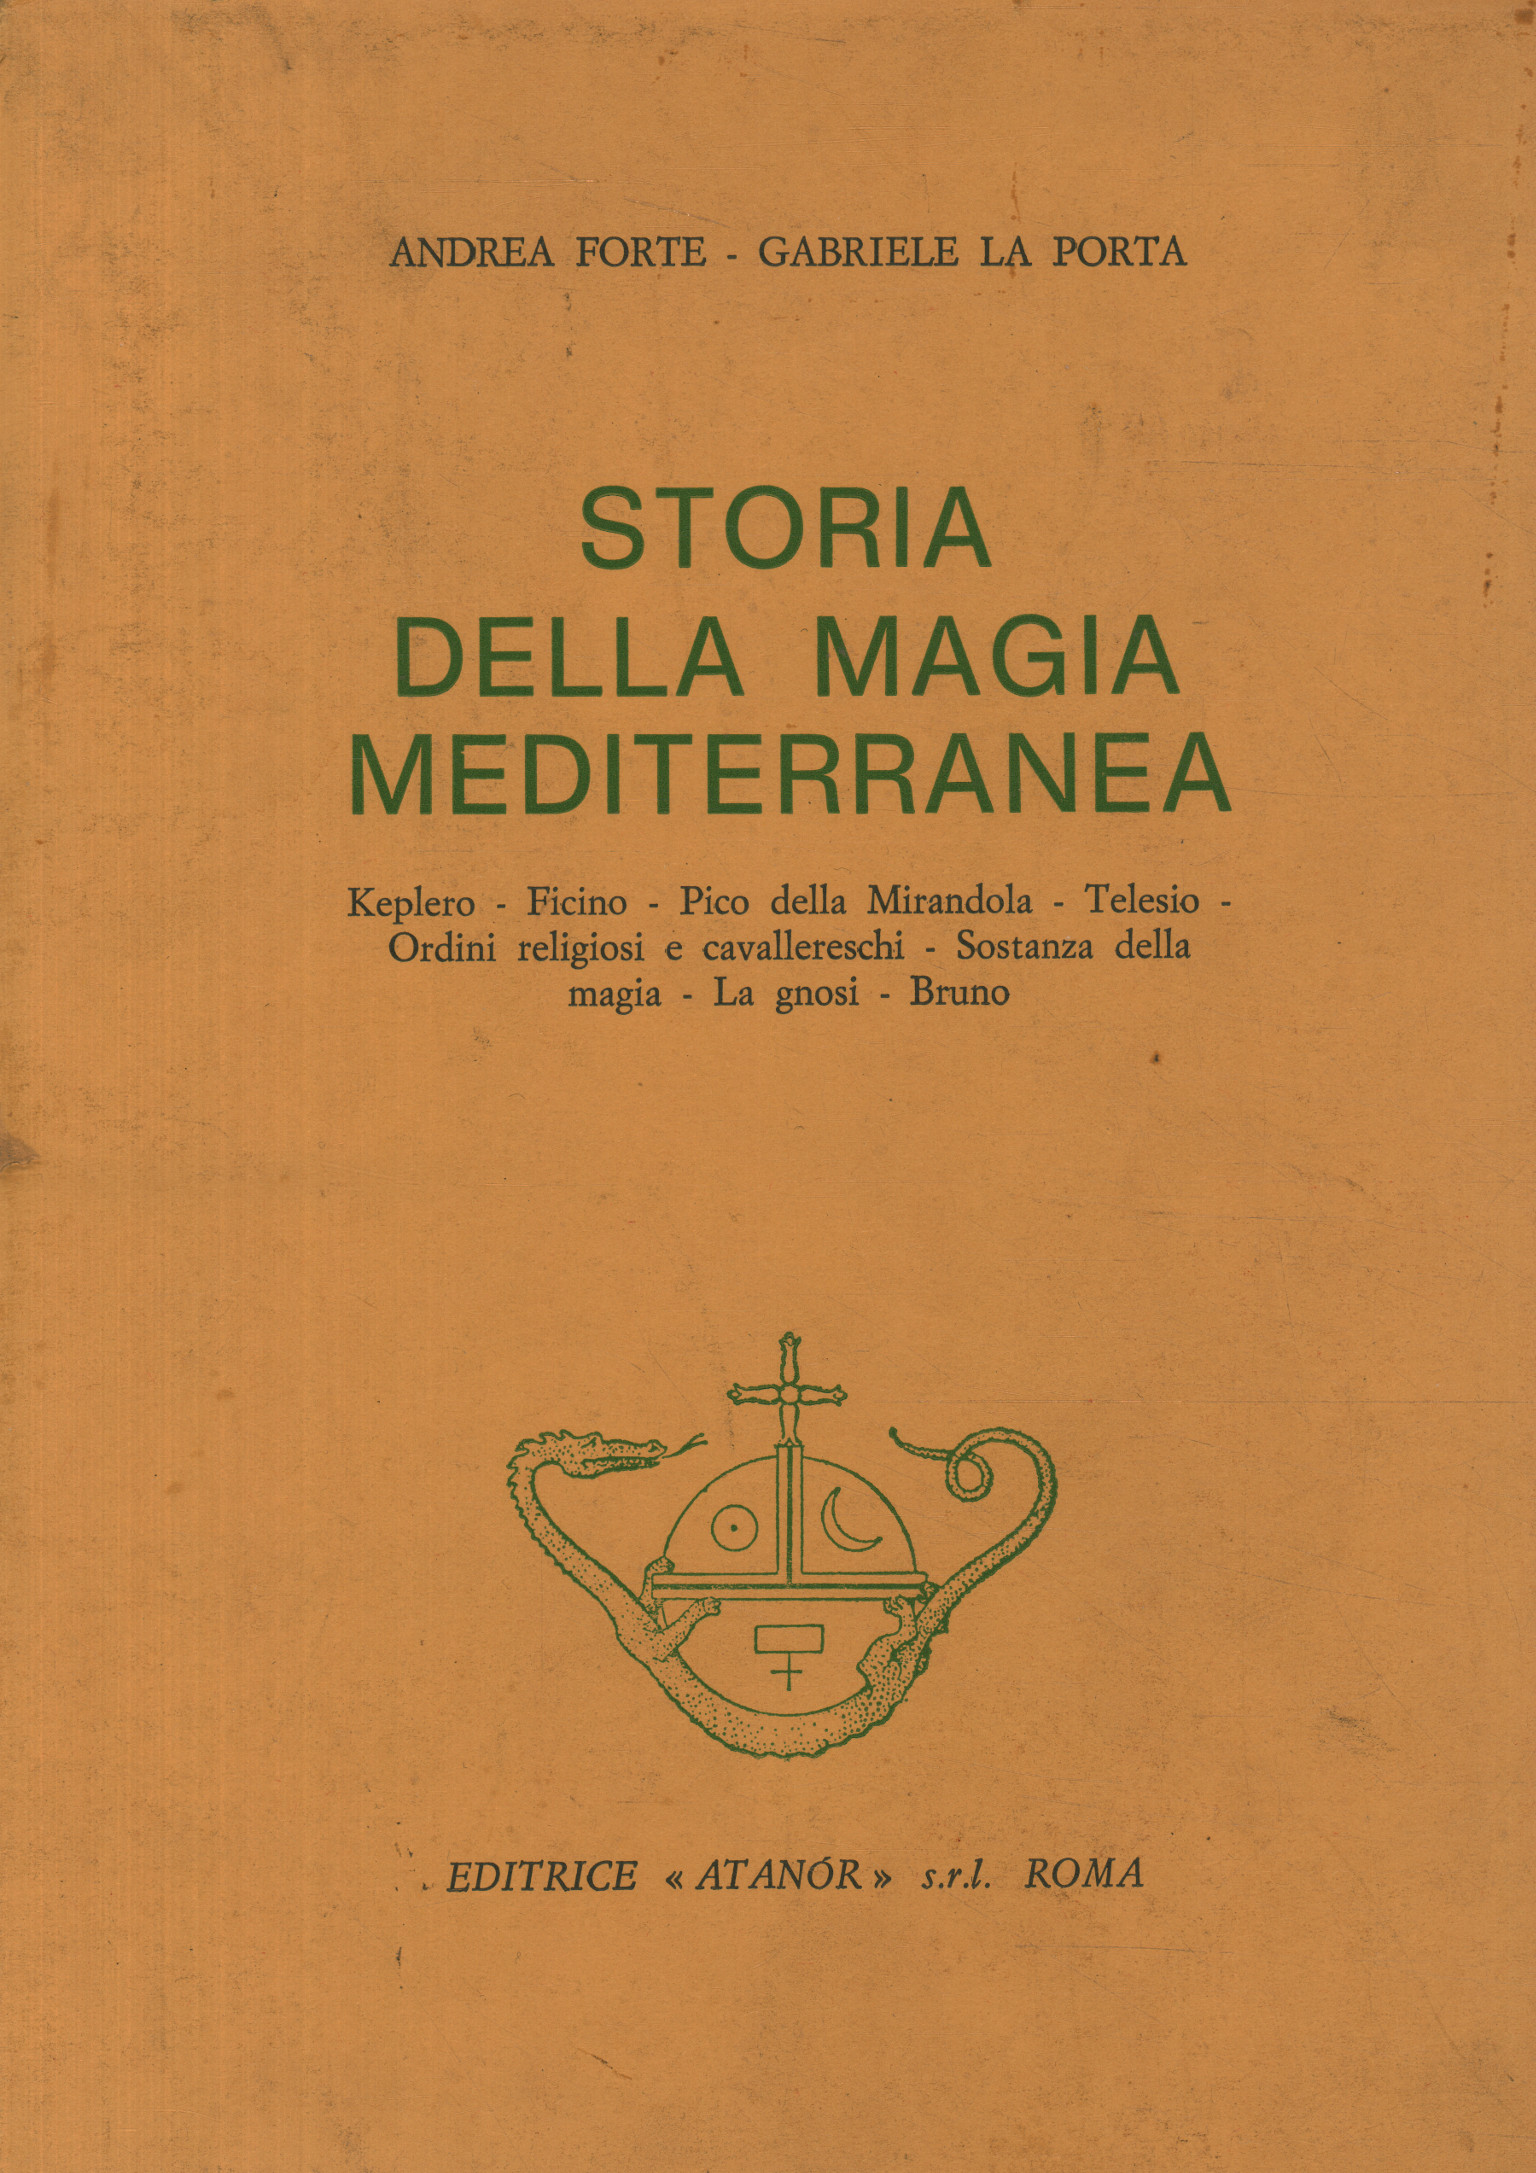 Historia de la magia mediterránea